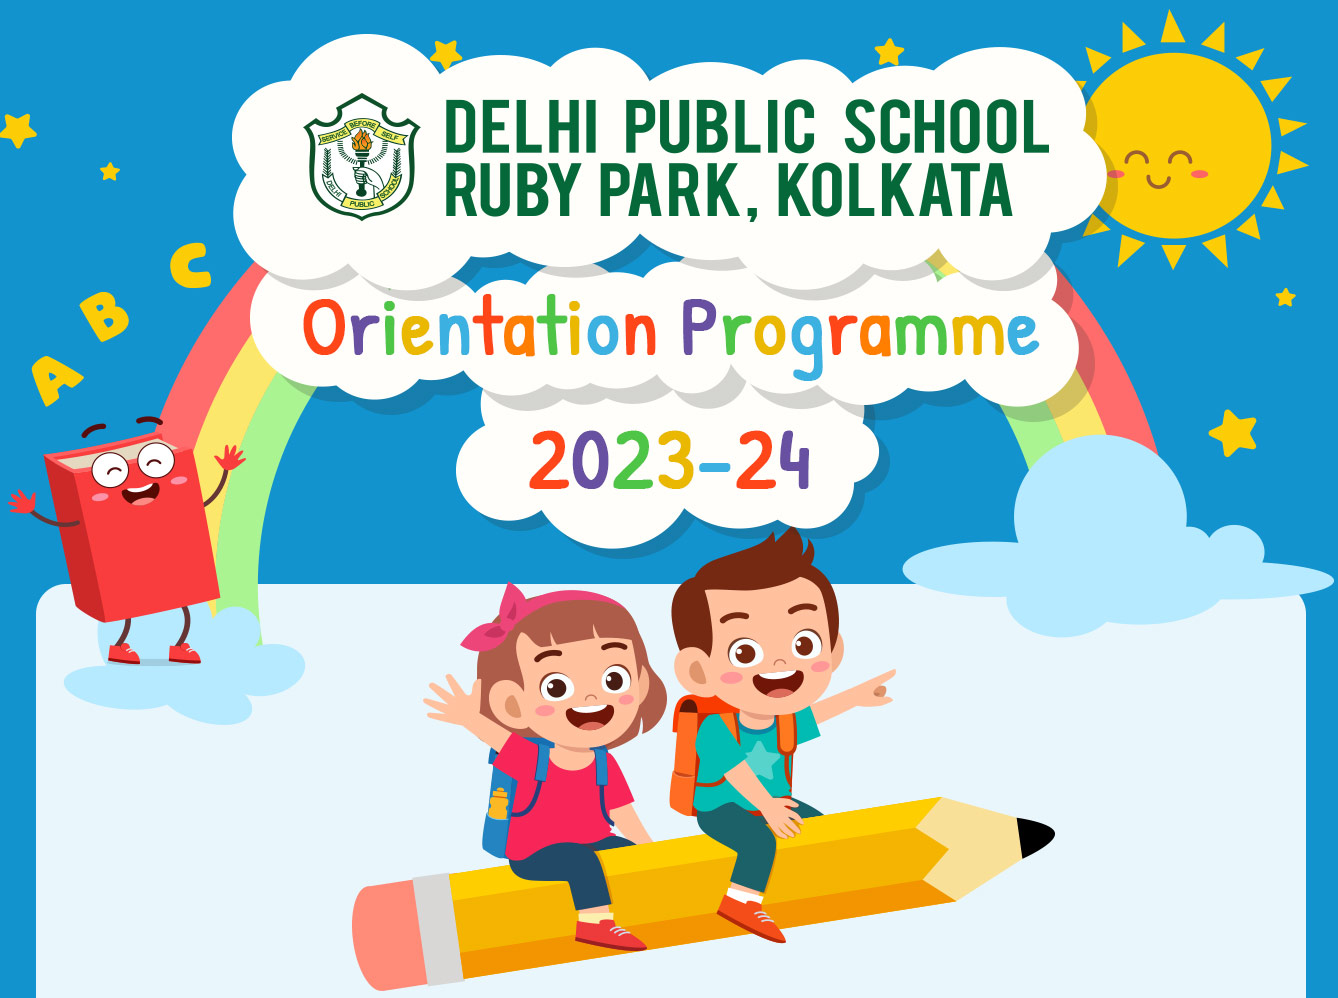 DPS Ruby Park, Kolkata Invites you to an orientation programme